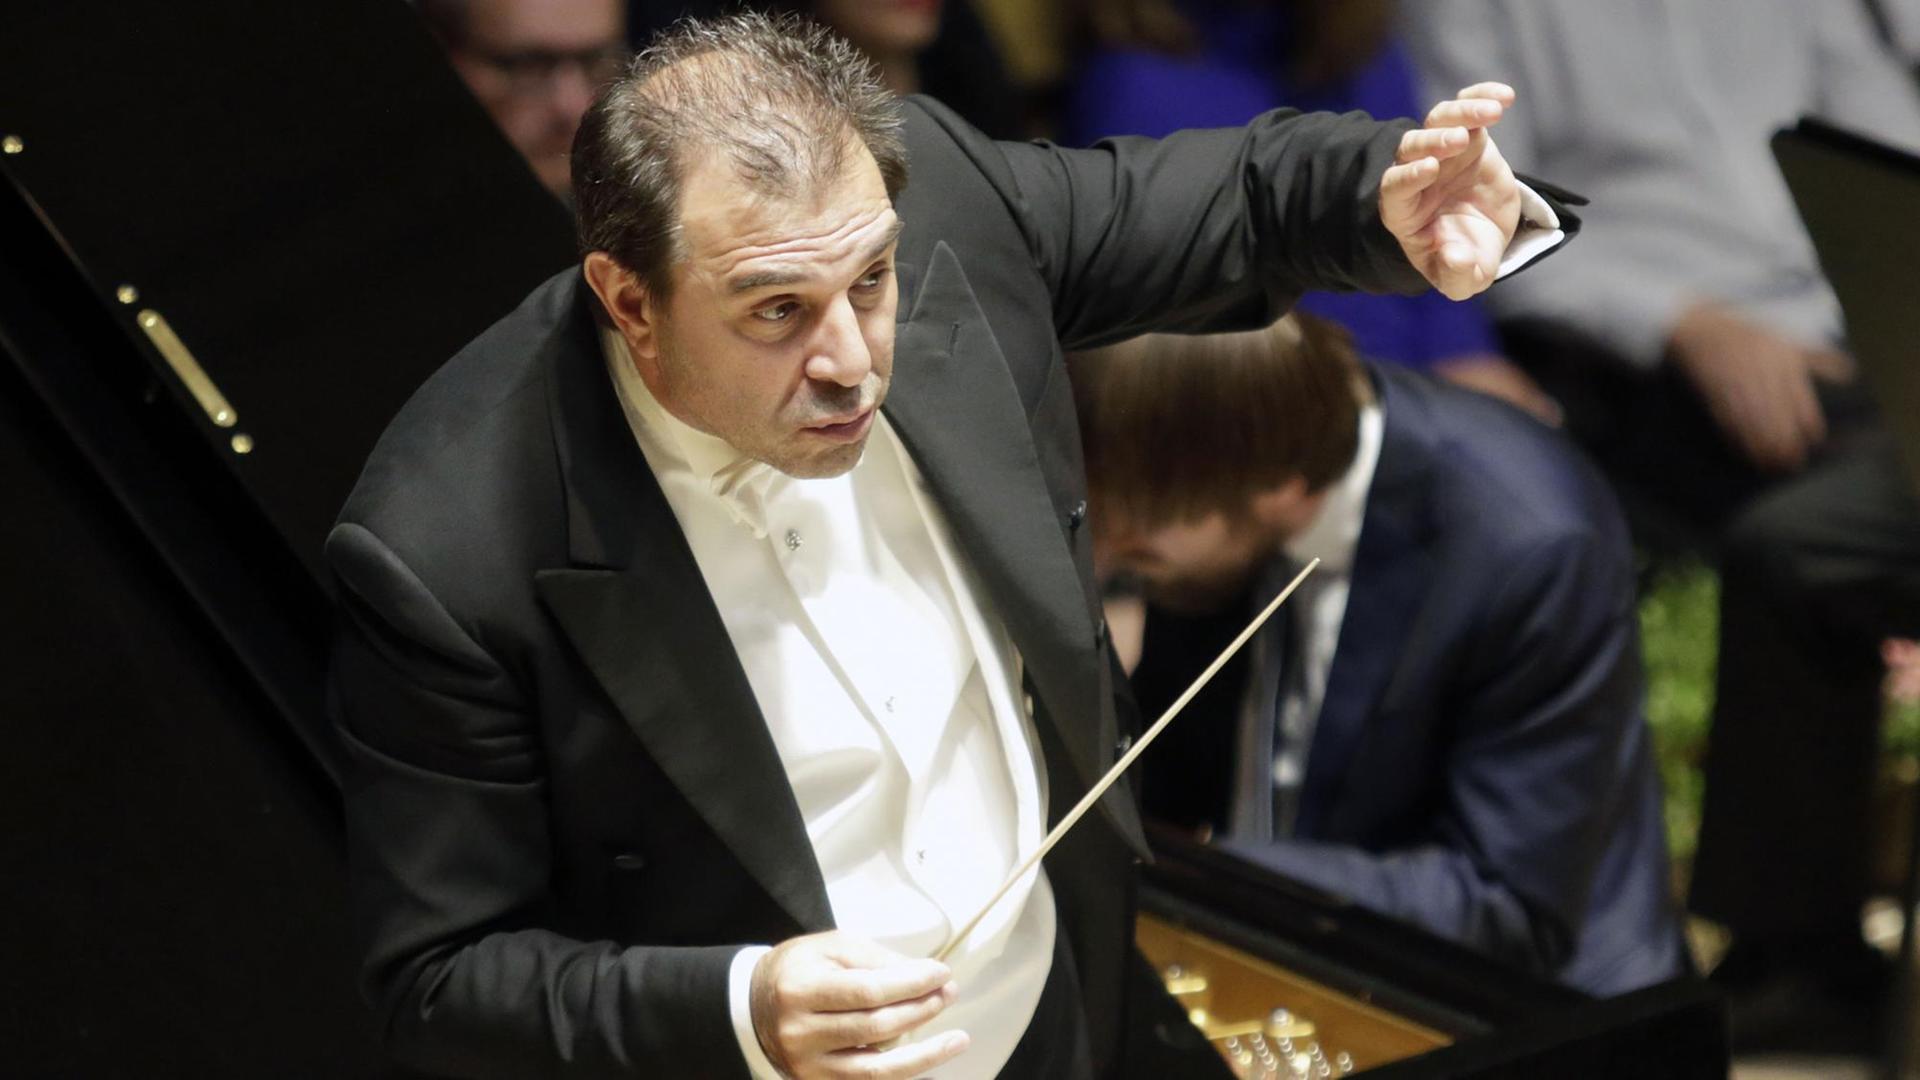 Der italienische Dirigent Daniele Gatti dirigiert das Royal Orchestra Concertgebouw Amsterdam während des 73. Prague Spring international music festival in Prag.